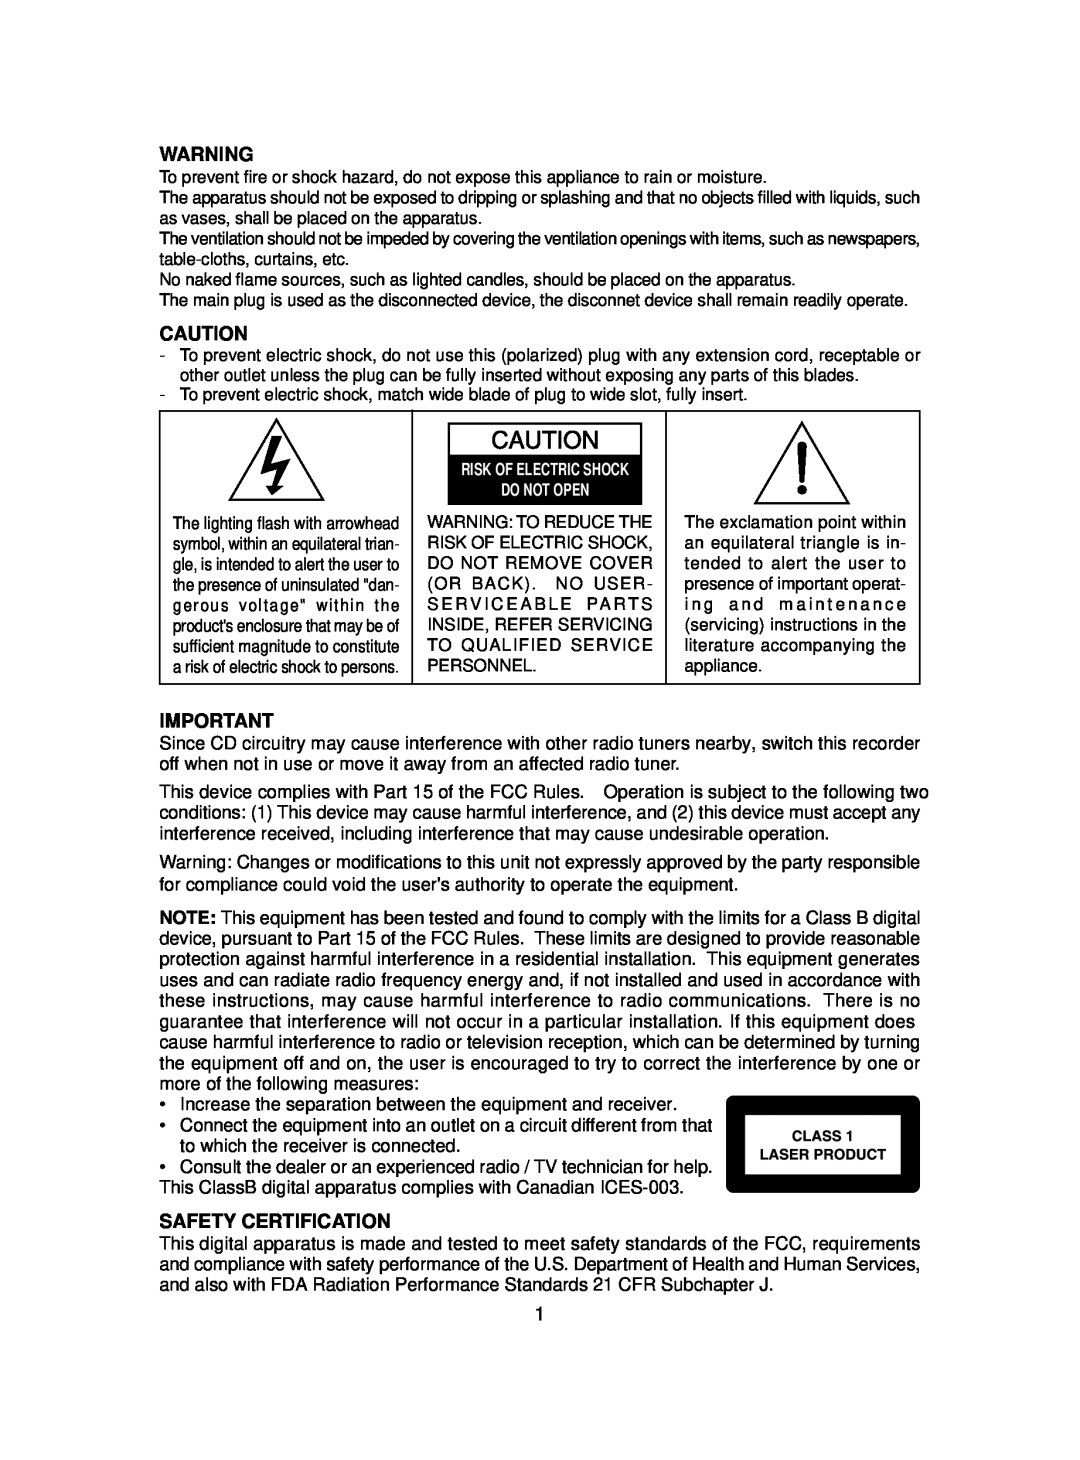 MGA Entertainment SMB-657 manual Safety Certification 